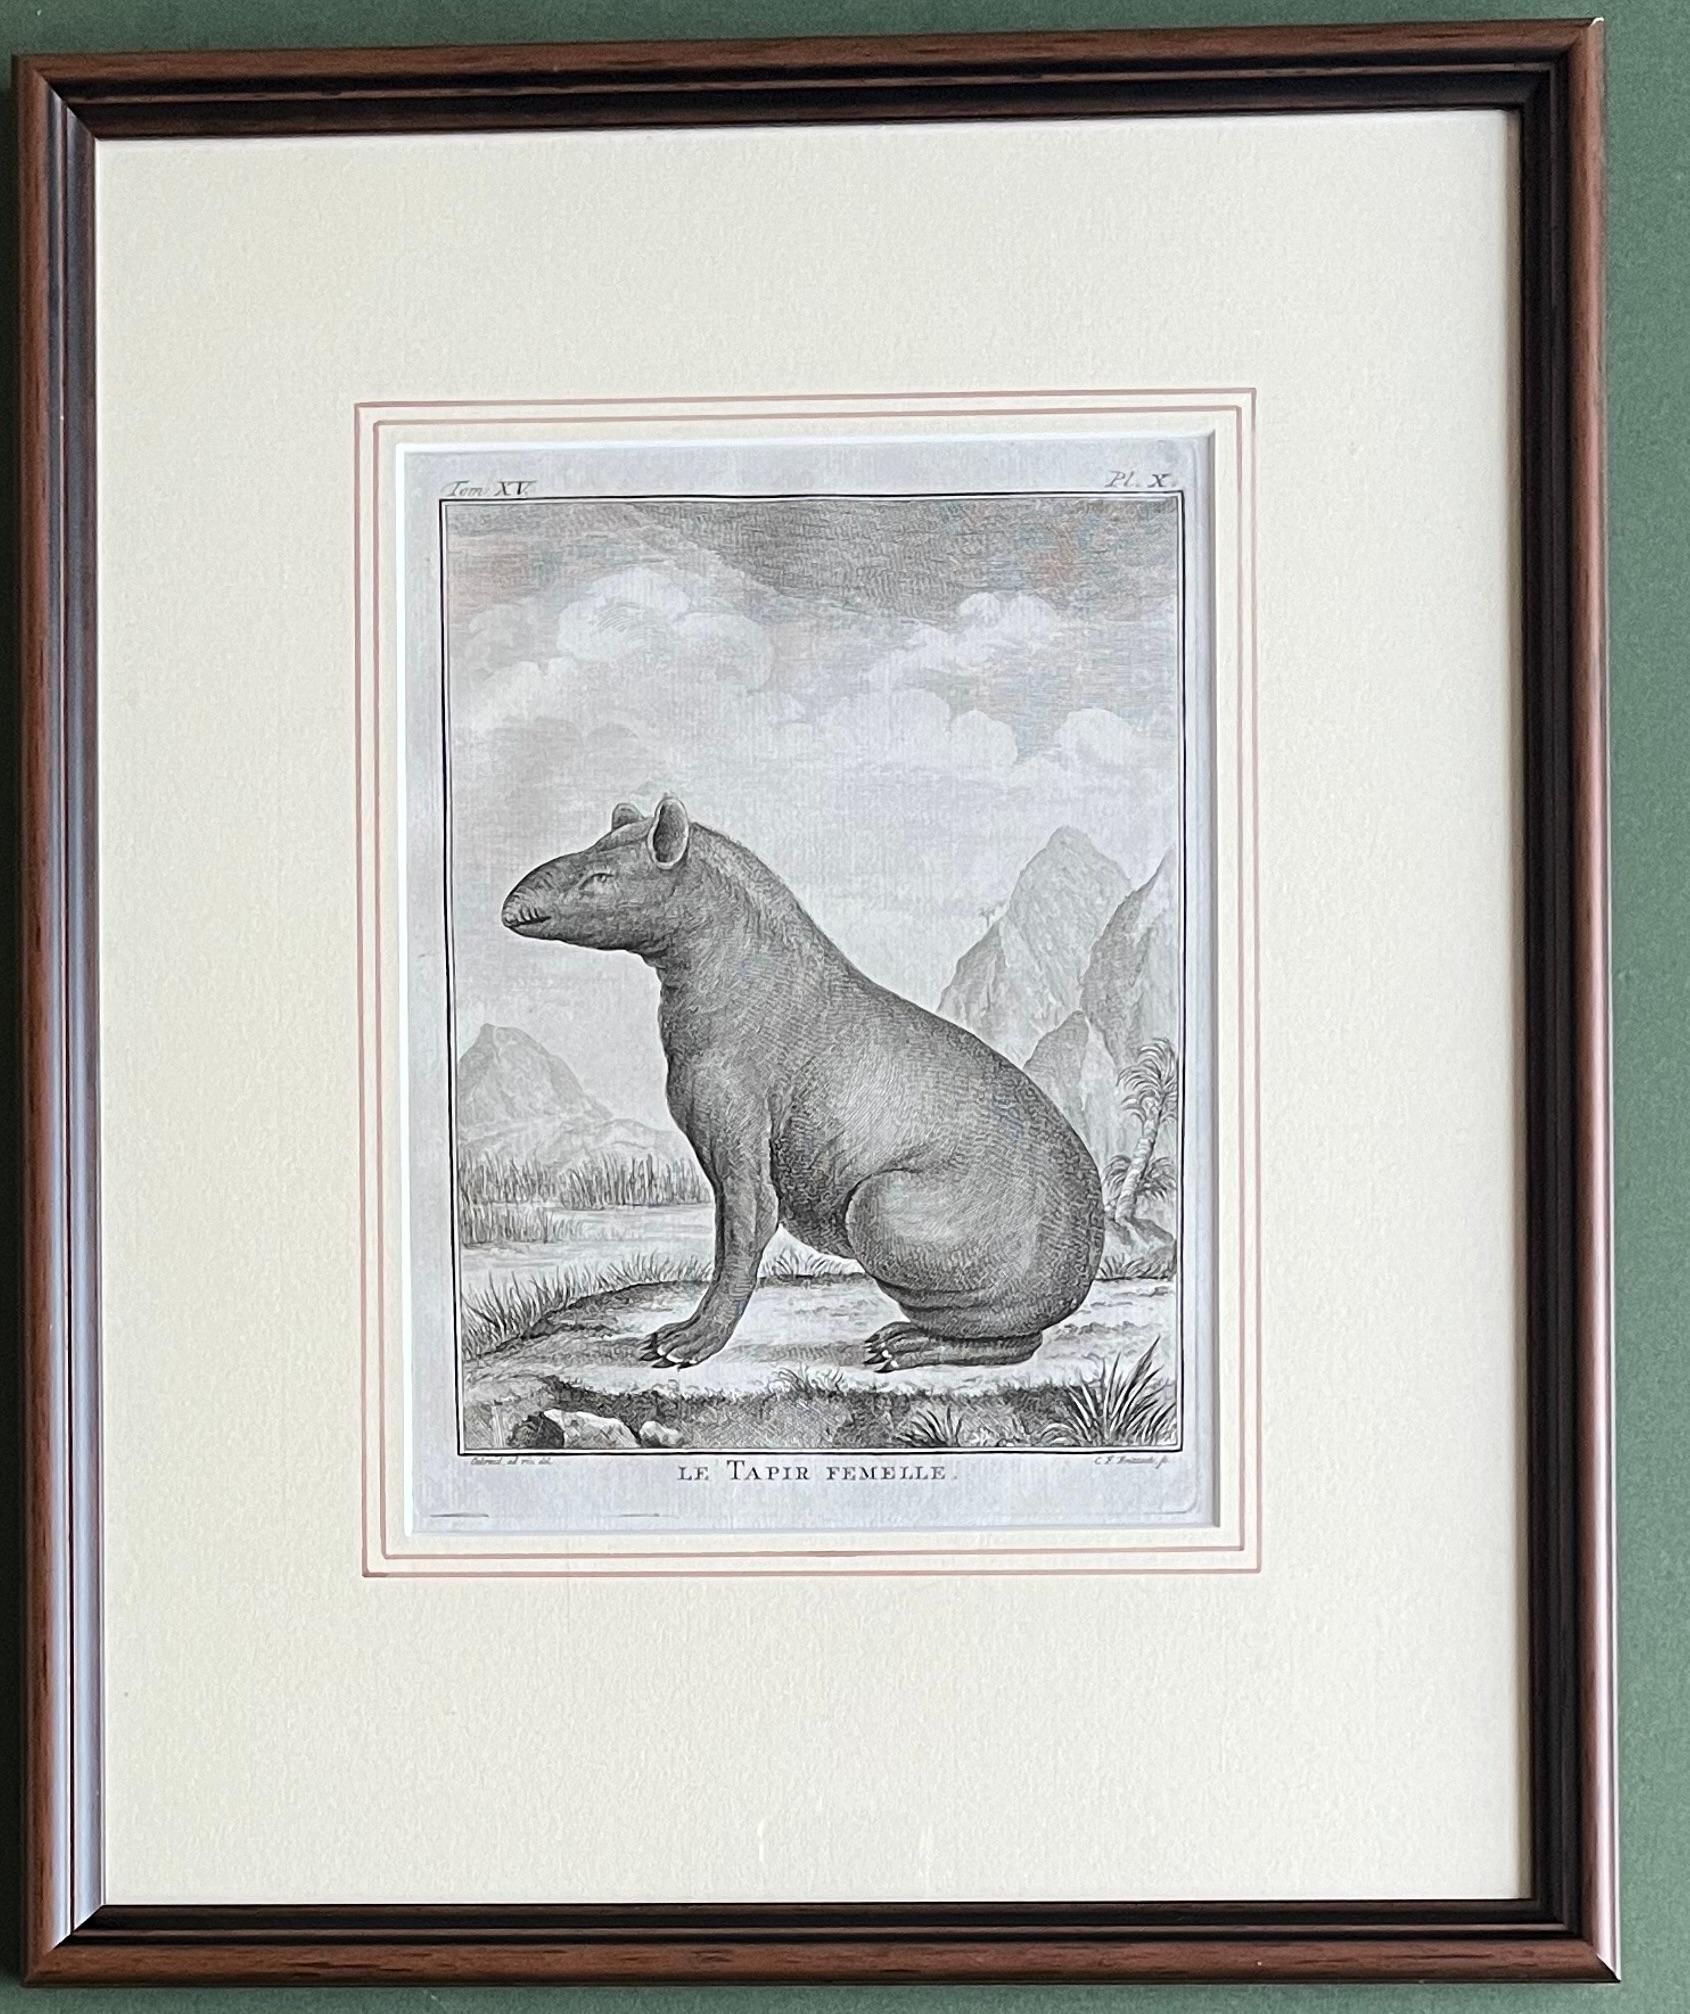 Une très belle paire de gravures de tapirs mâle et femelle.

Eau-forte / gravure sur papier vergé à la main.
Taille de la feuille : (7,9 x 10,2 pouces). 
Taille de l'image :  (6,3 x 7,9 pouces).
Dimensions du cadre : 15 x 12½ pouces

D'après une